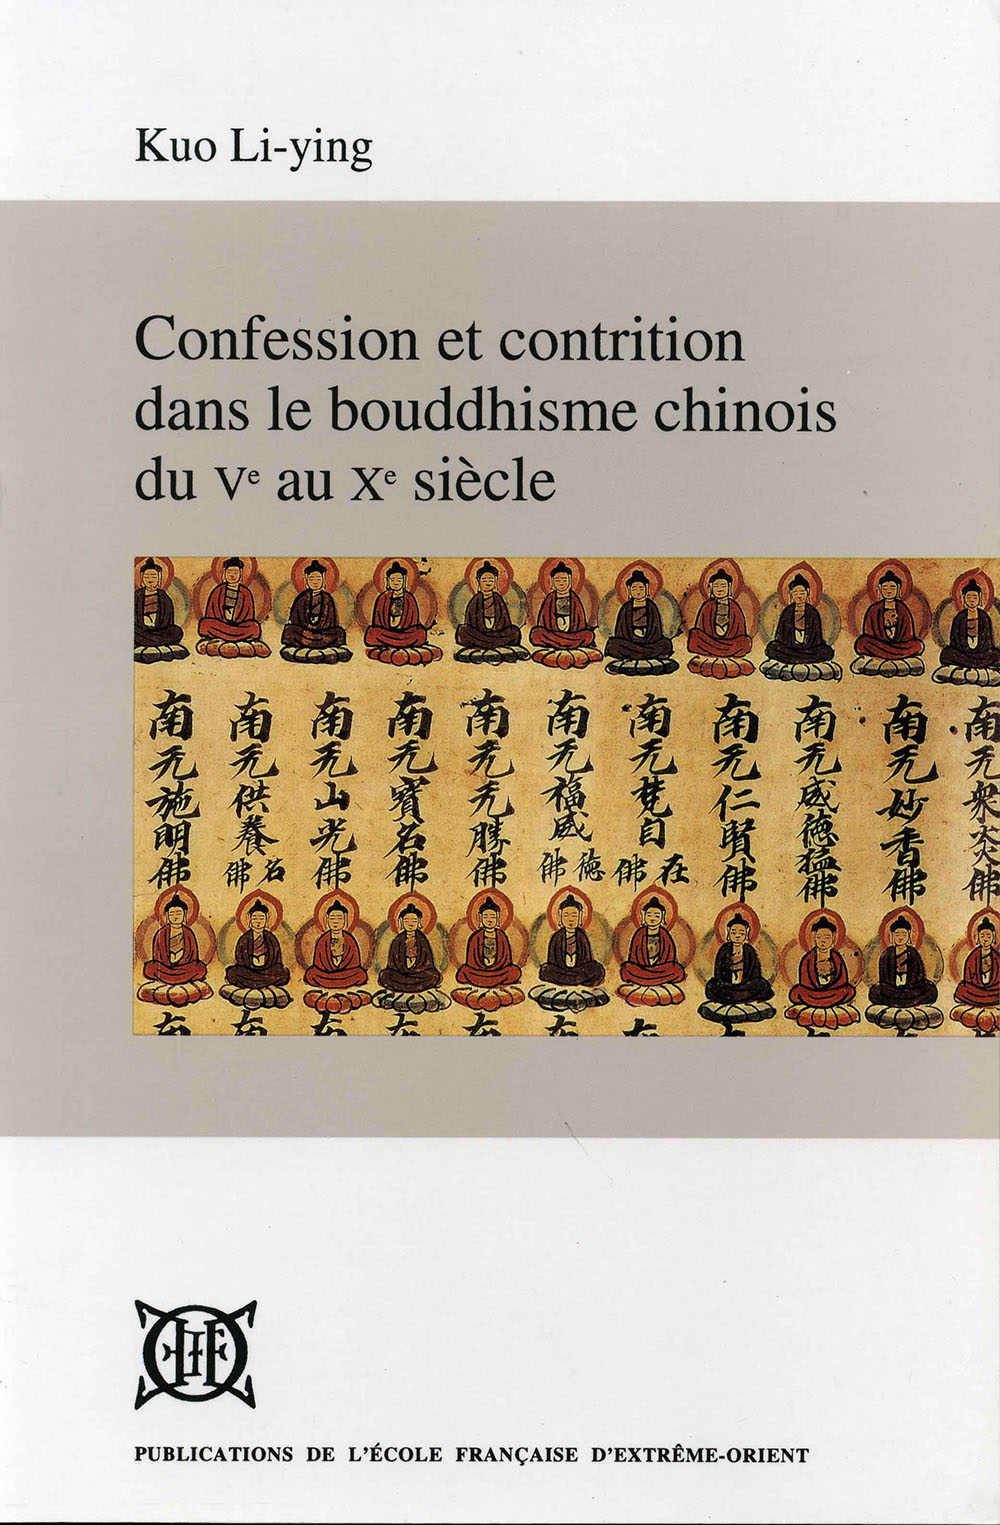 Confession et contrition dans le bouddhisme chinois du Ve au Xe siècle